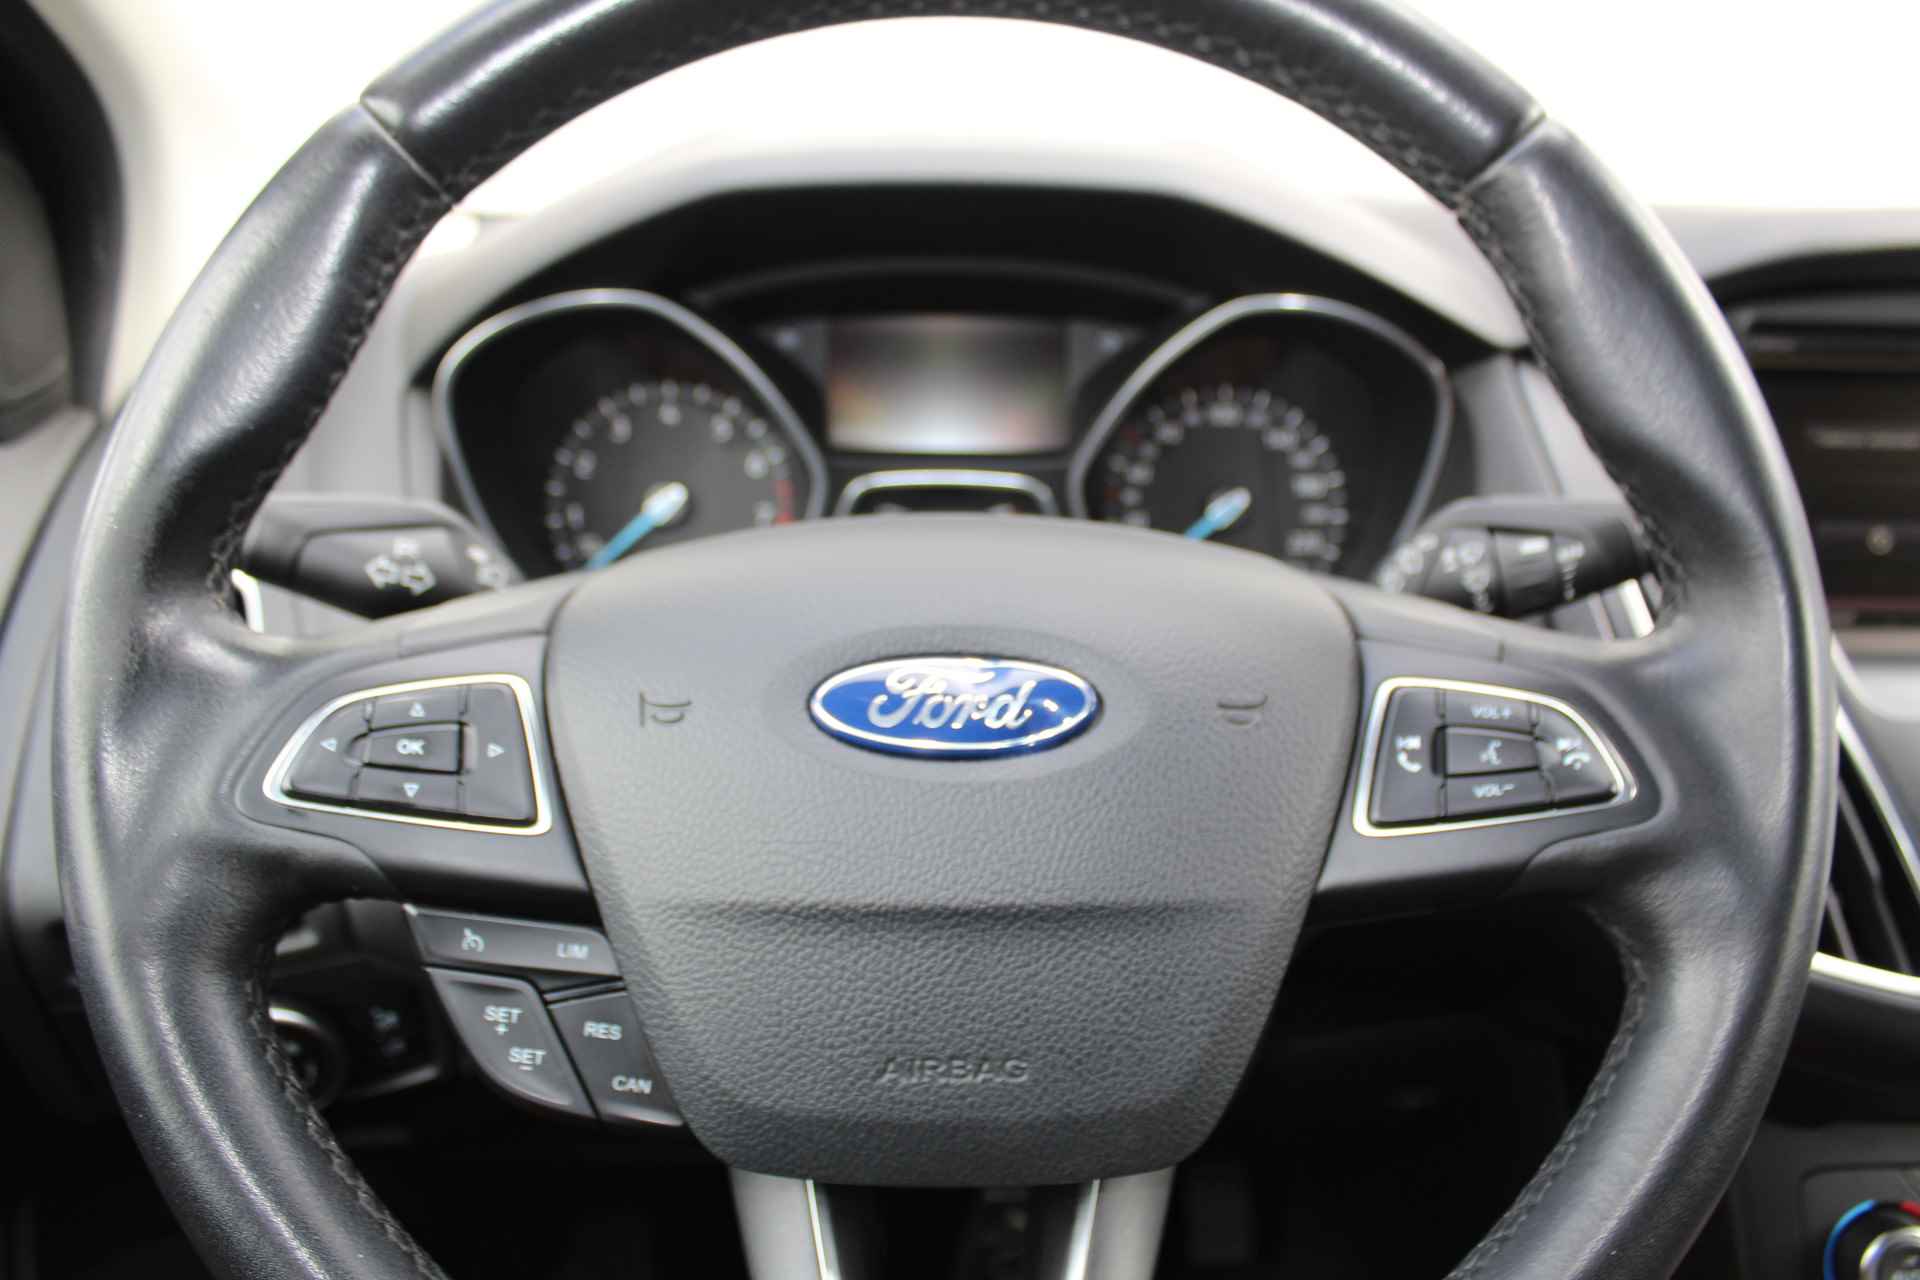 Ford Focus 1.0-125pk Titanium. Fijn rijdende en goed onderhouden Ford Focus hatchback. Volautm. airco dual, cruise control, multifunctioneel stuurwiel, boordcomputer, navigatie, telefoonvoorb., metallic lak, LM wielen, elektr. ramen en spiegels etc. - 17/38